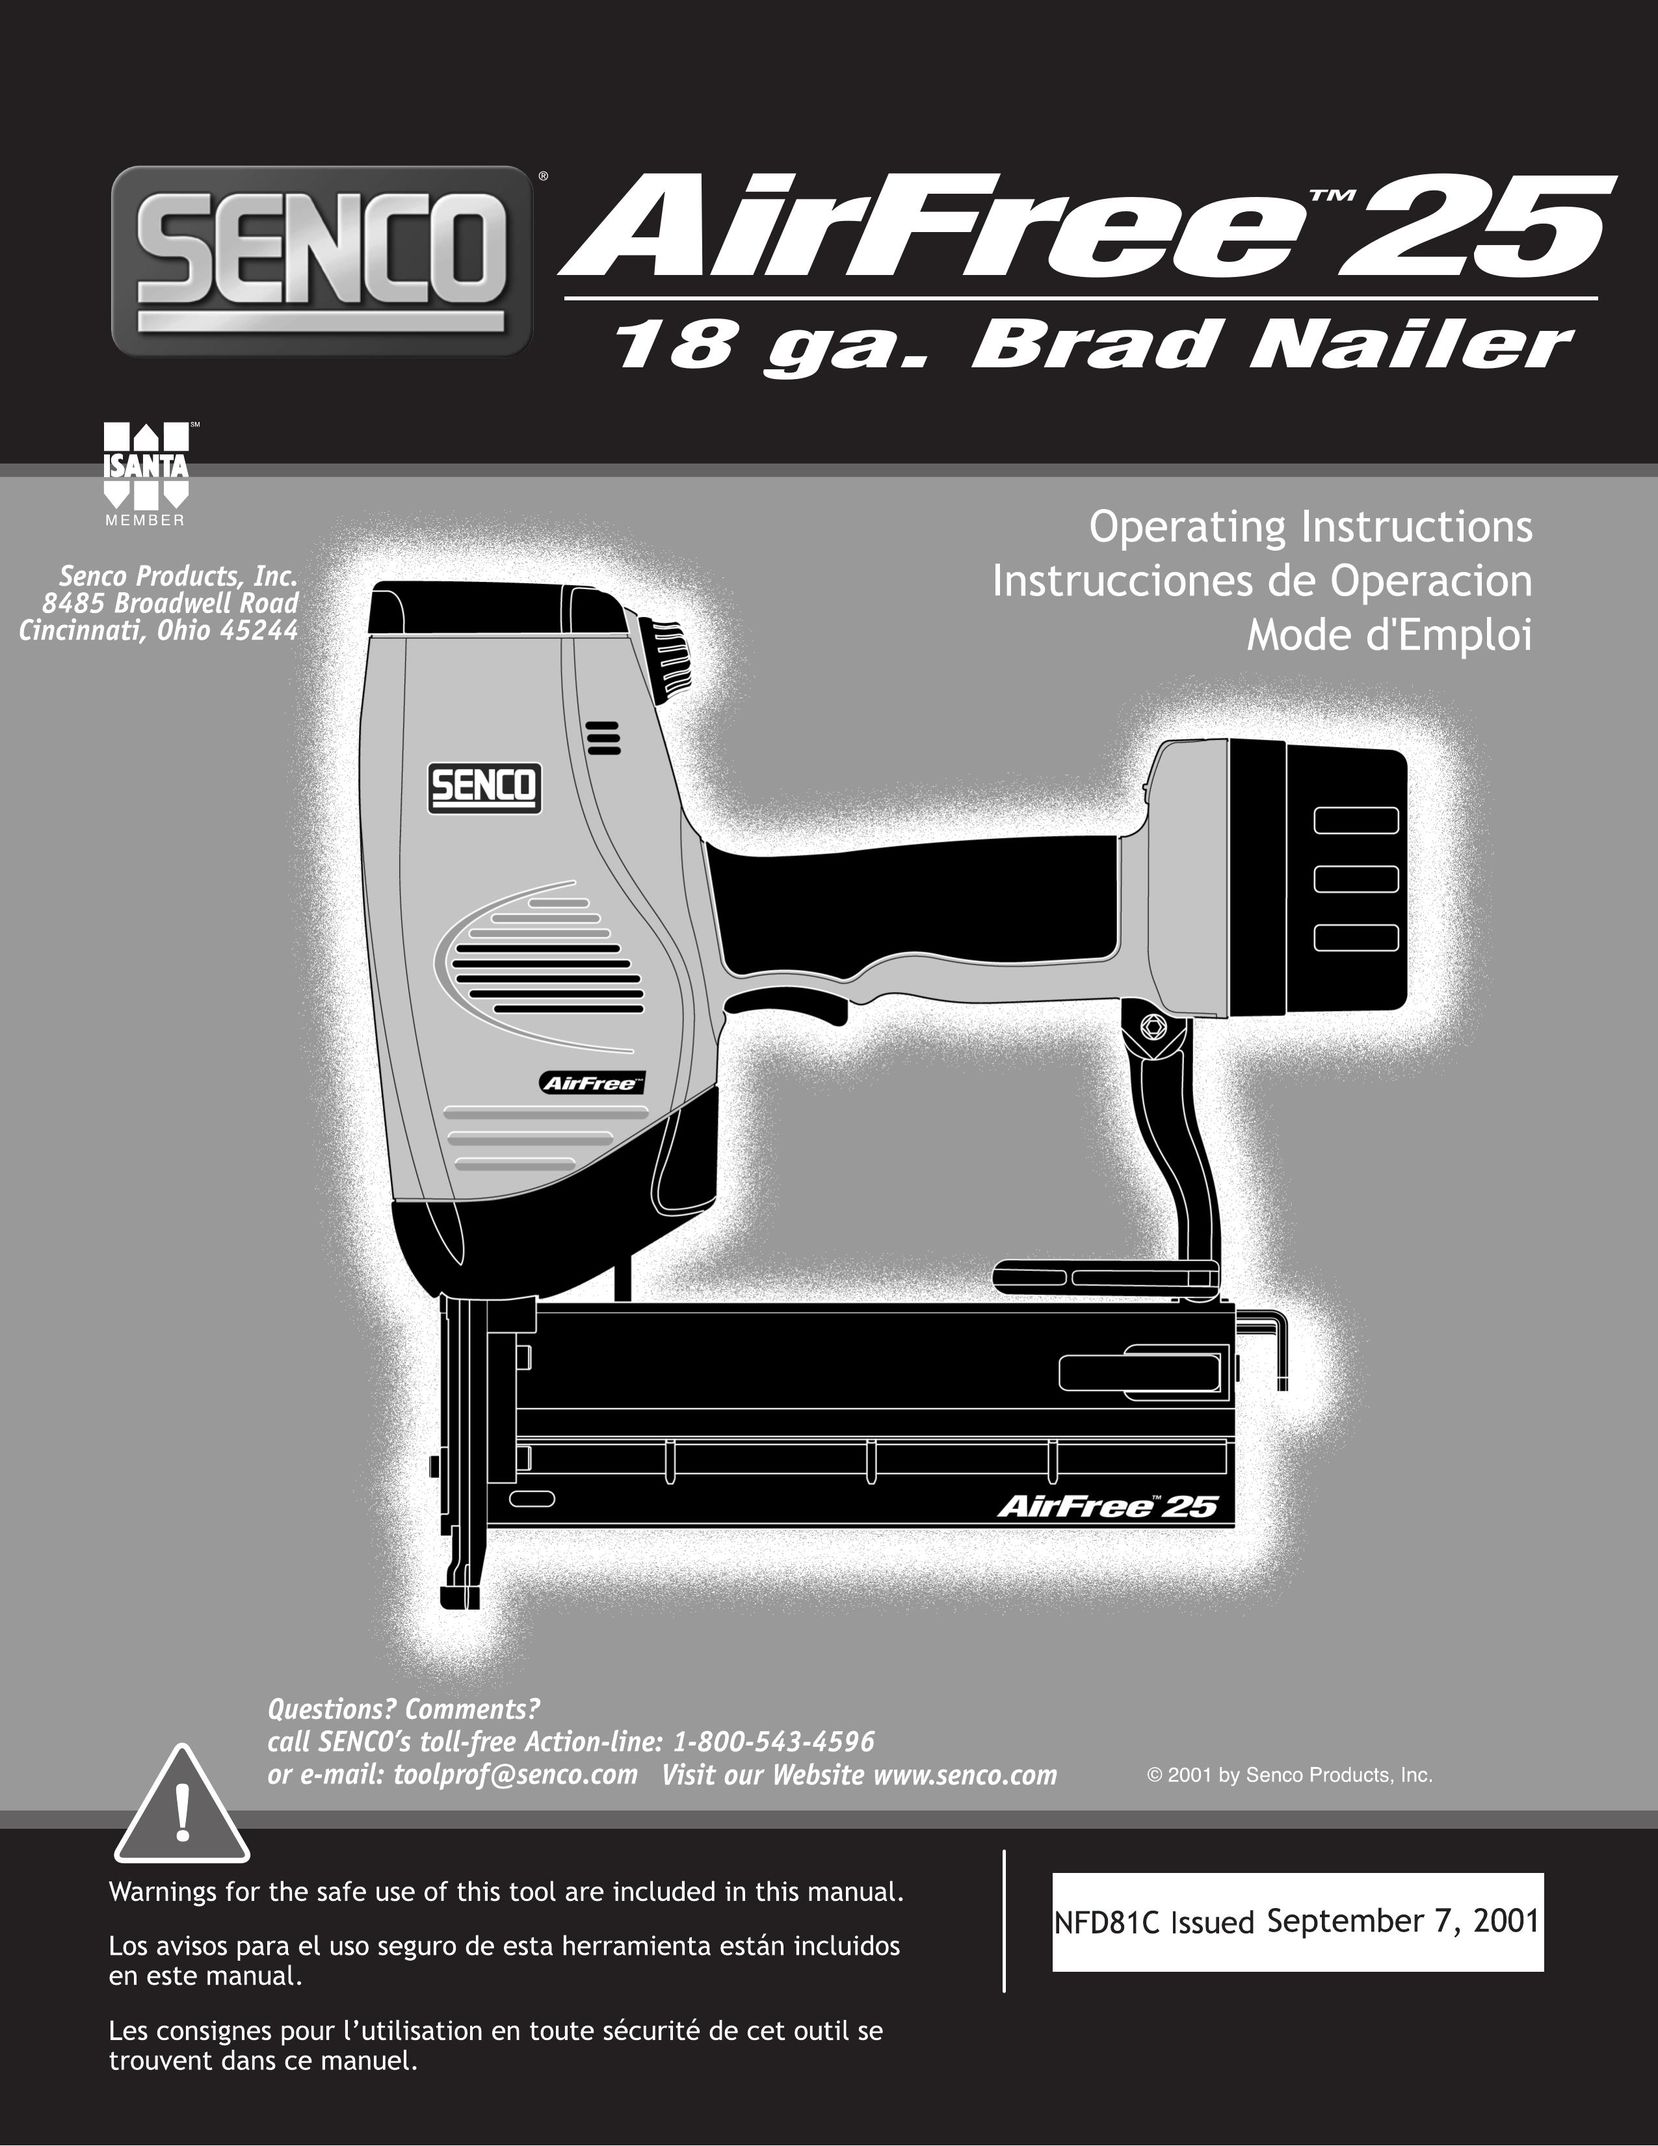 Senco AirFree 25 Nail Gun User Manual